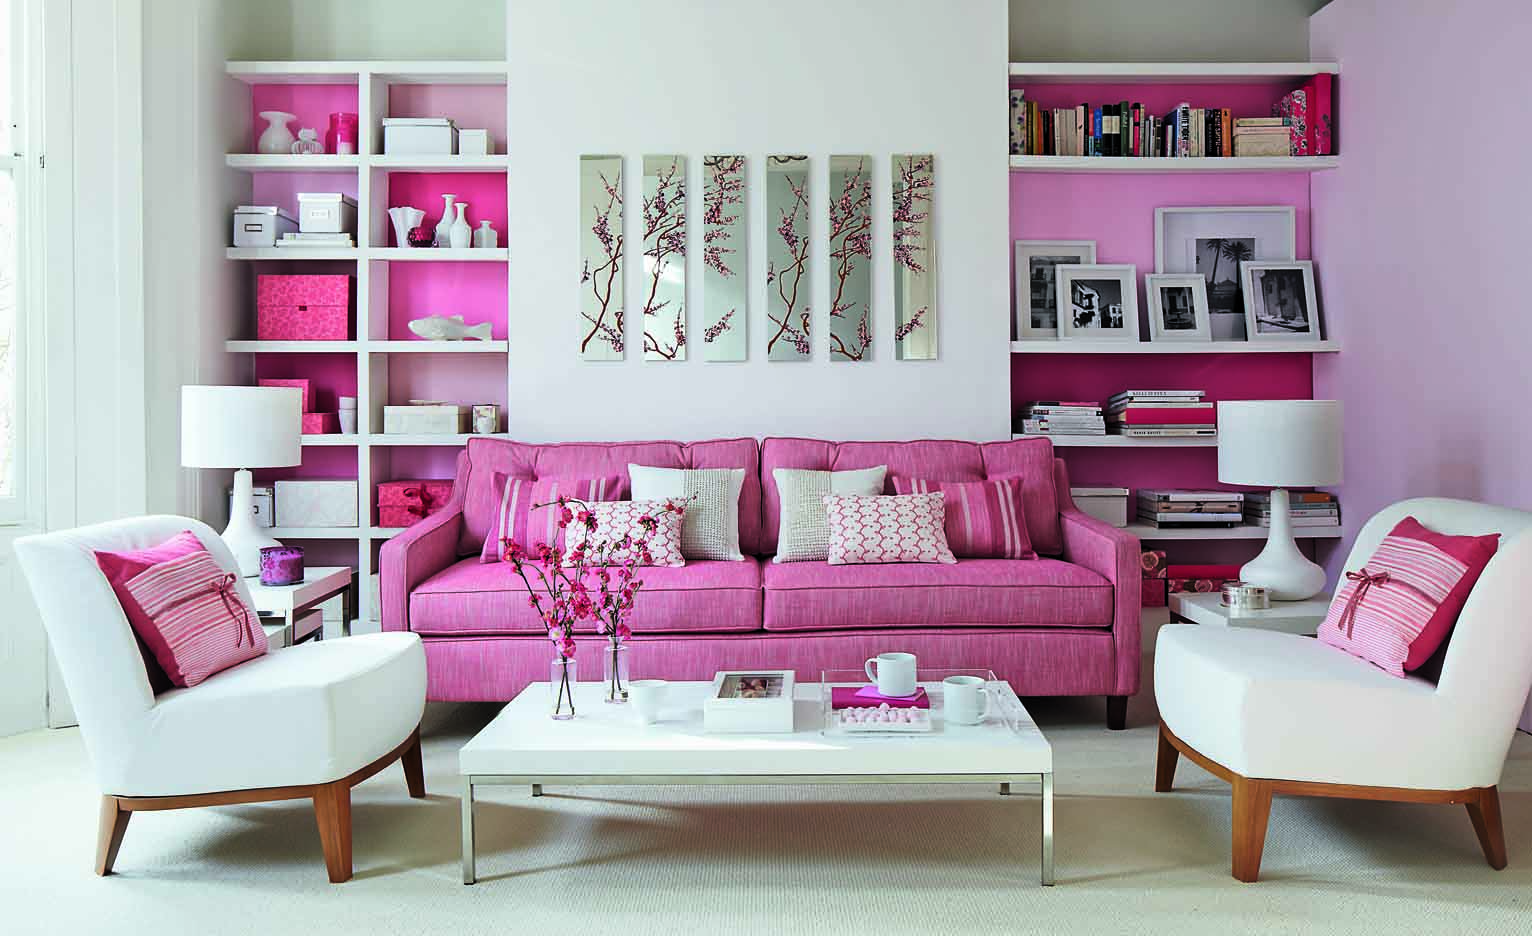 50 Dekorasi Interior Ruang Tamu Warna Pink Klasik Desainrumahnyacom